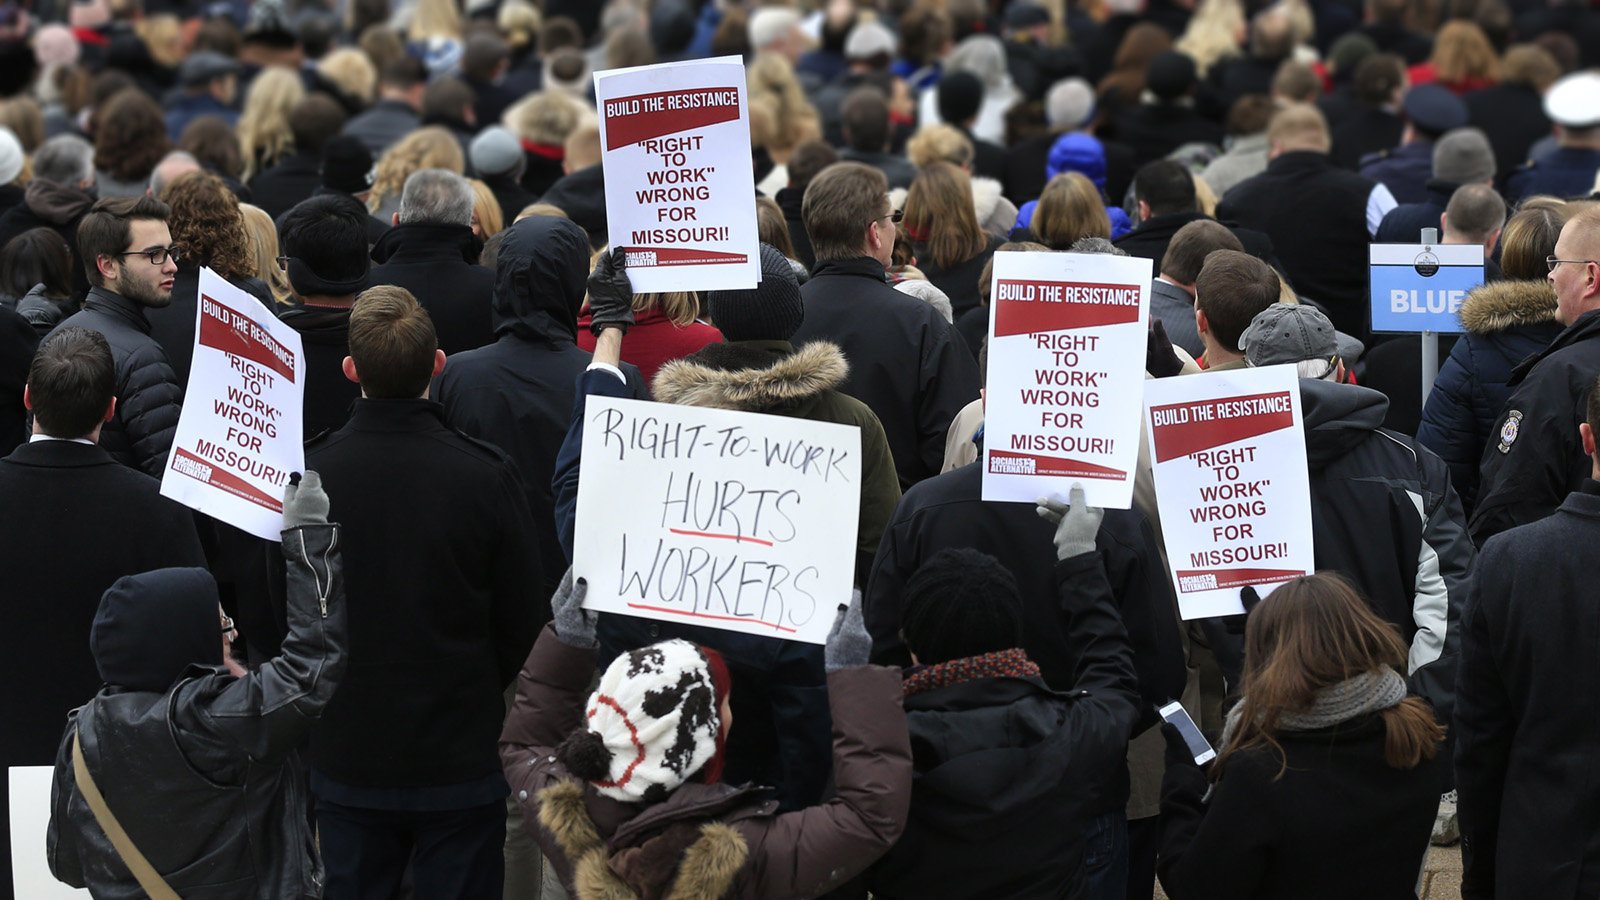 הפגנה נגד החוק 'הזכות לעבוד' הפוגע בעובדים ינואר 2017 (צילום ארכיון: סוכנות AP).